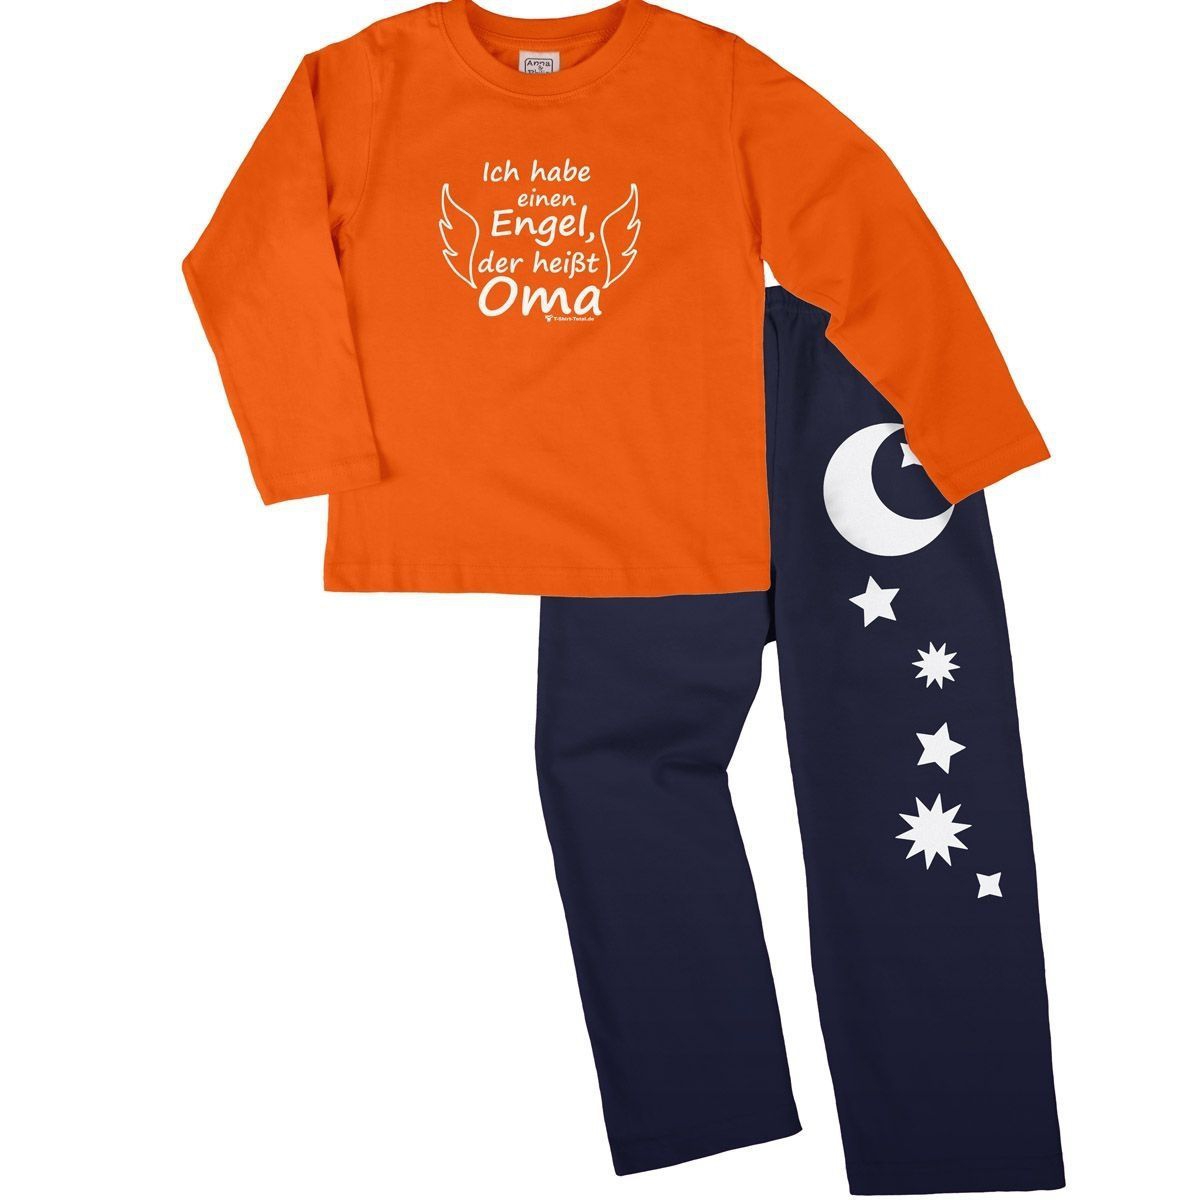 Engel Oma Pyjama Set orange / navy 122 / 128